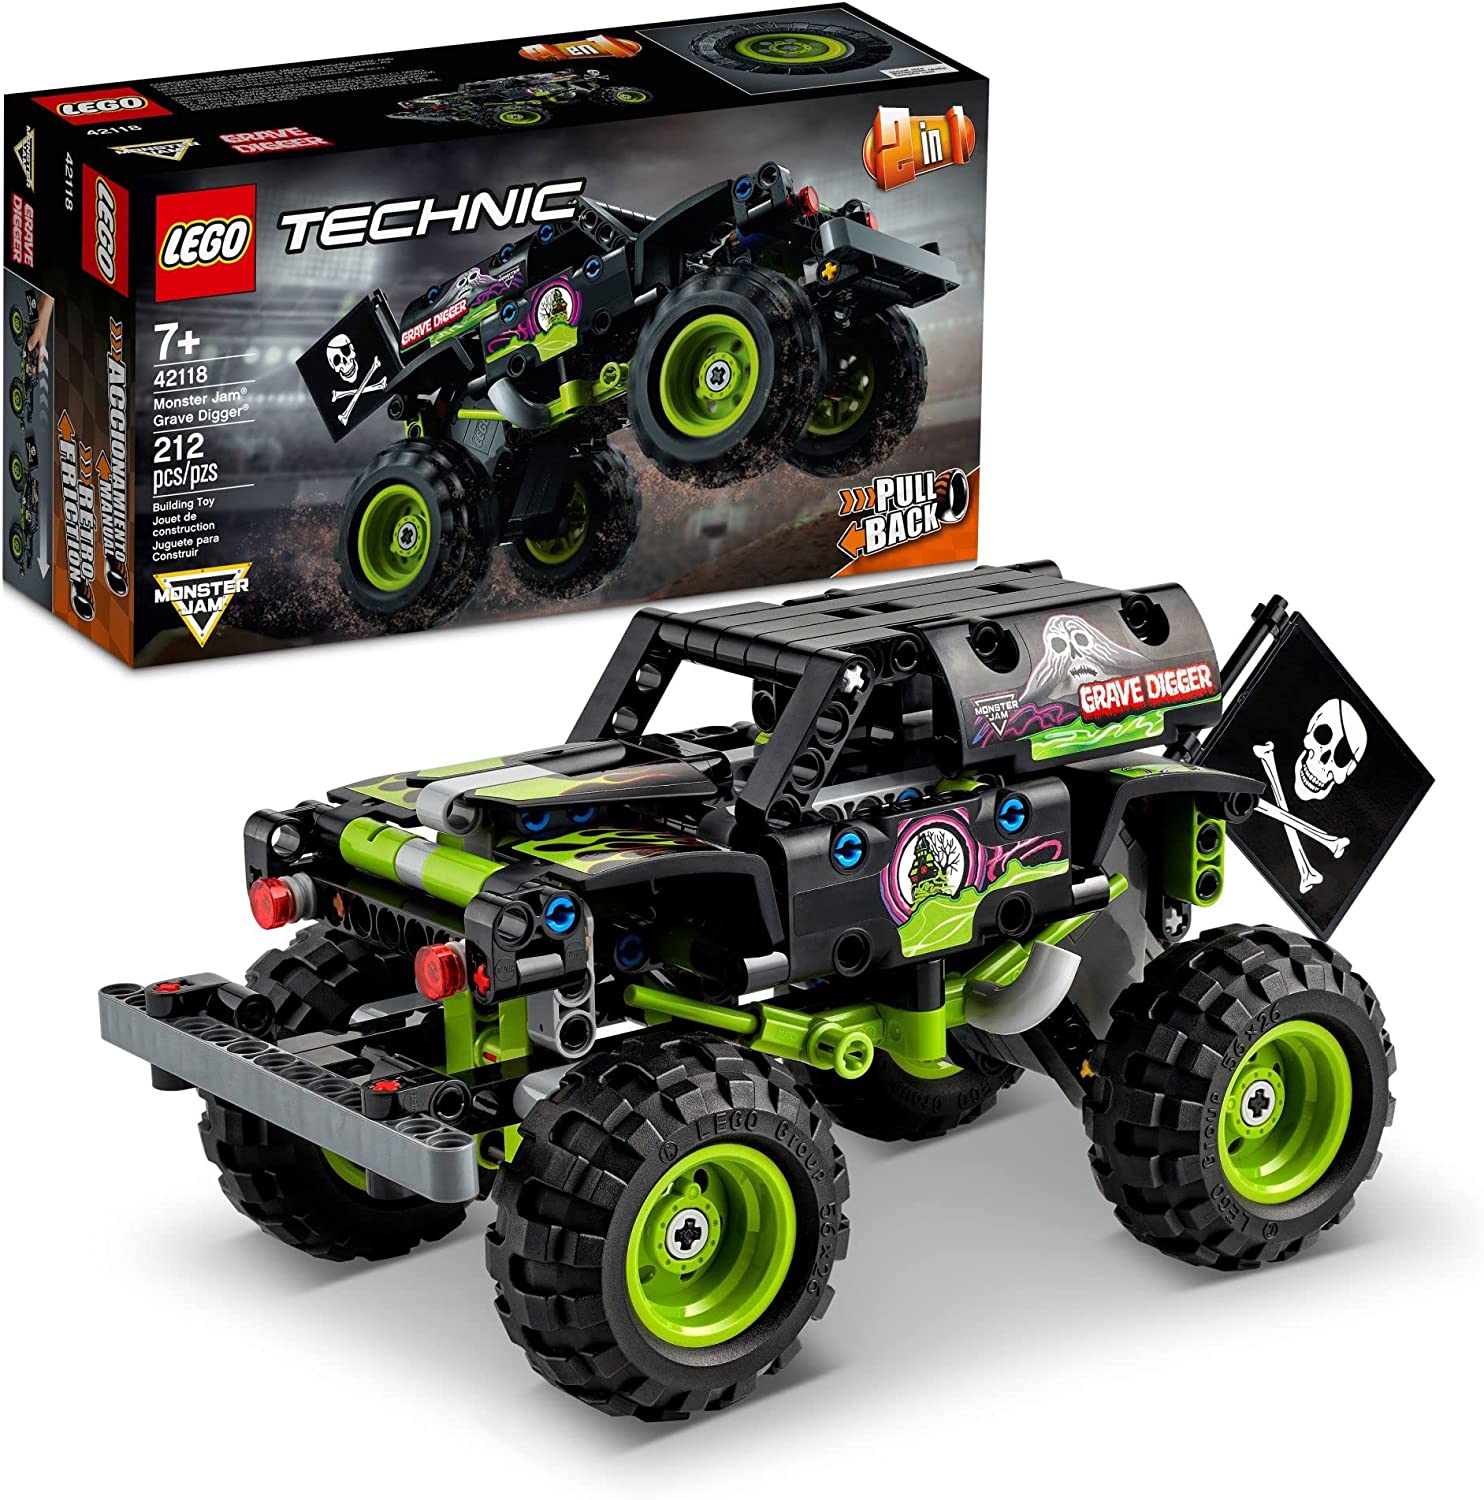 LEGO Technic Monster Jam Grave Digger 42118 Model Kit for Kids Who Love Monster Trucks (212 Pieces)